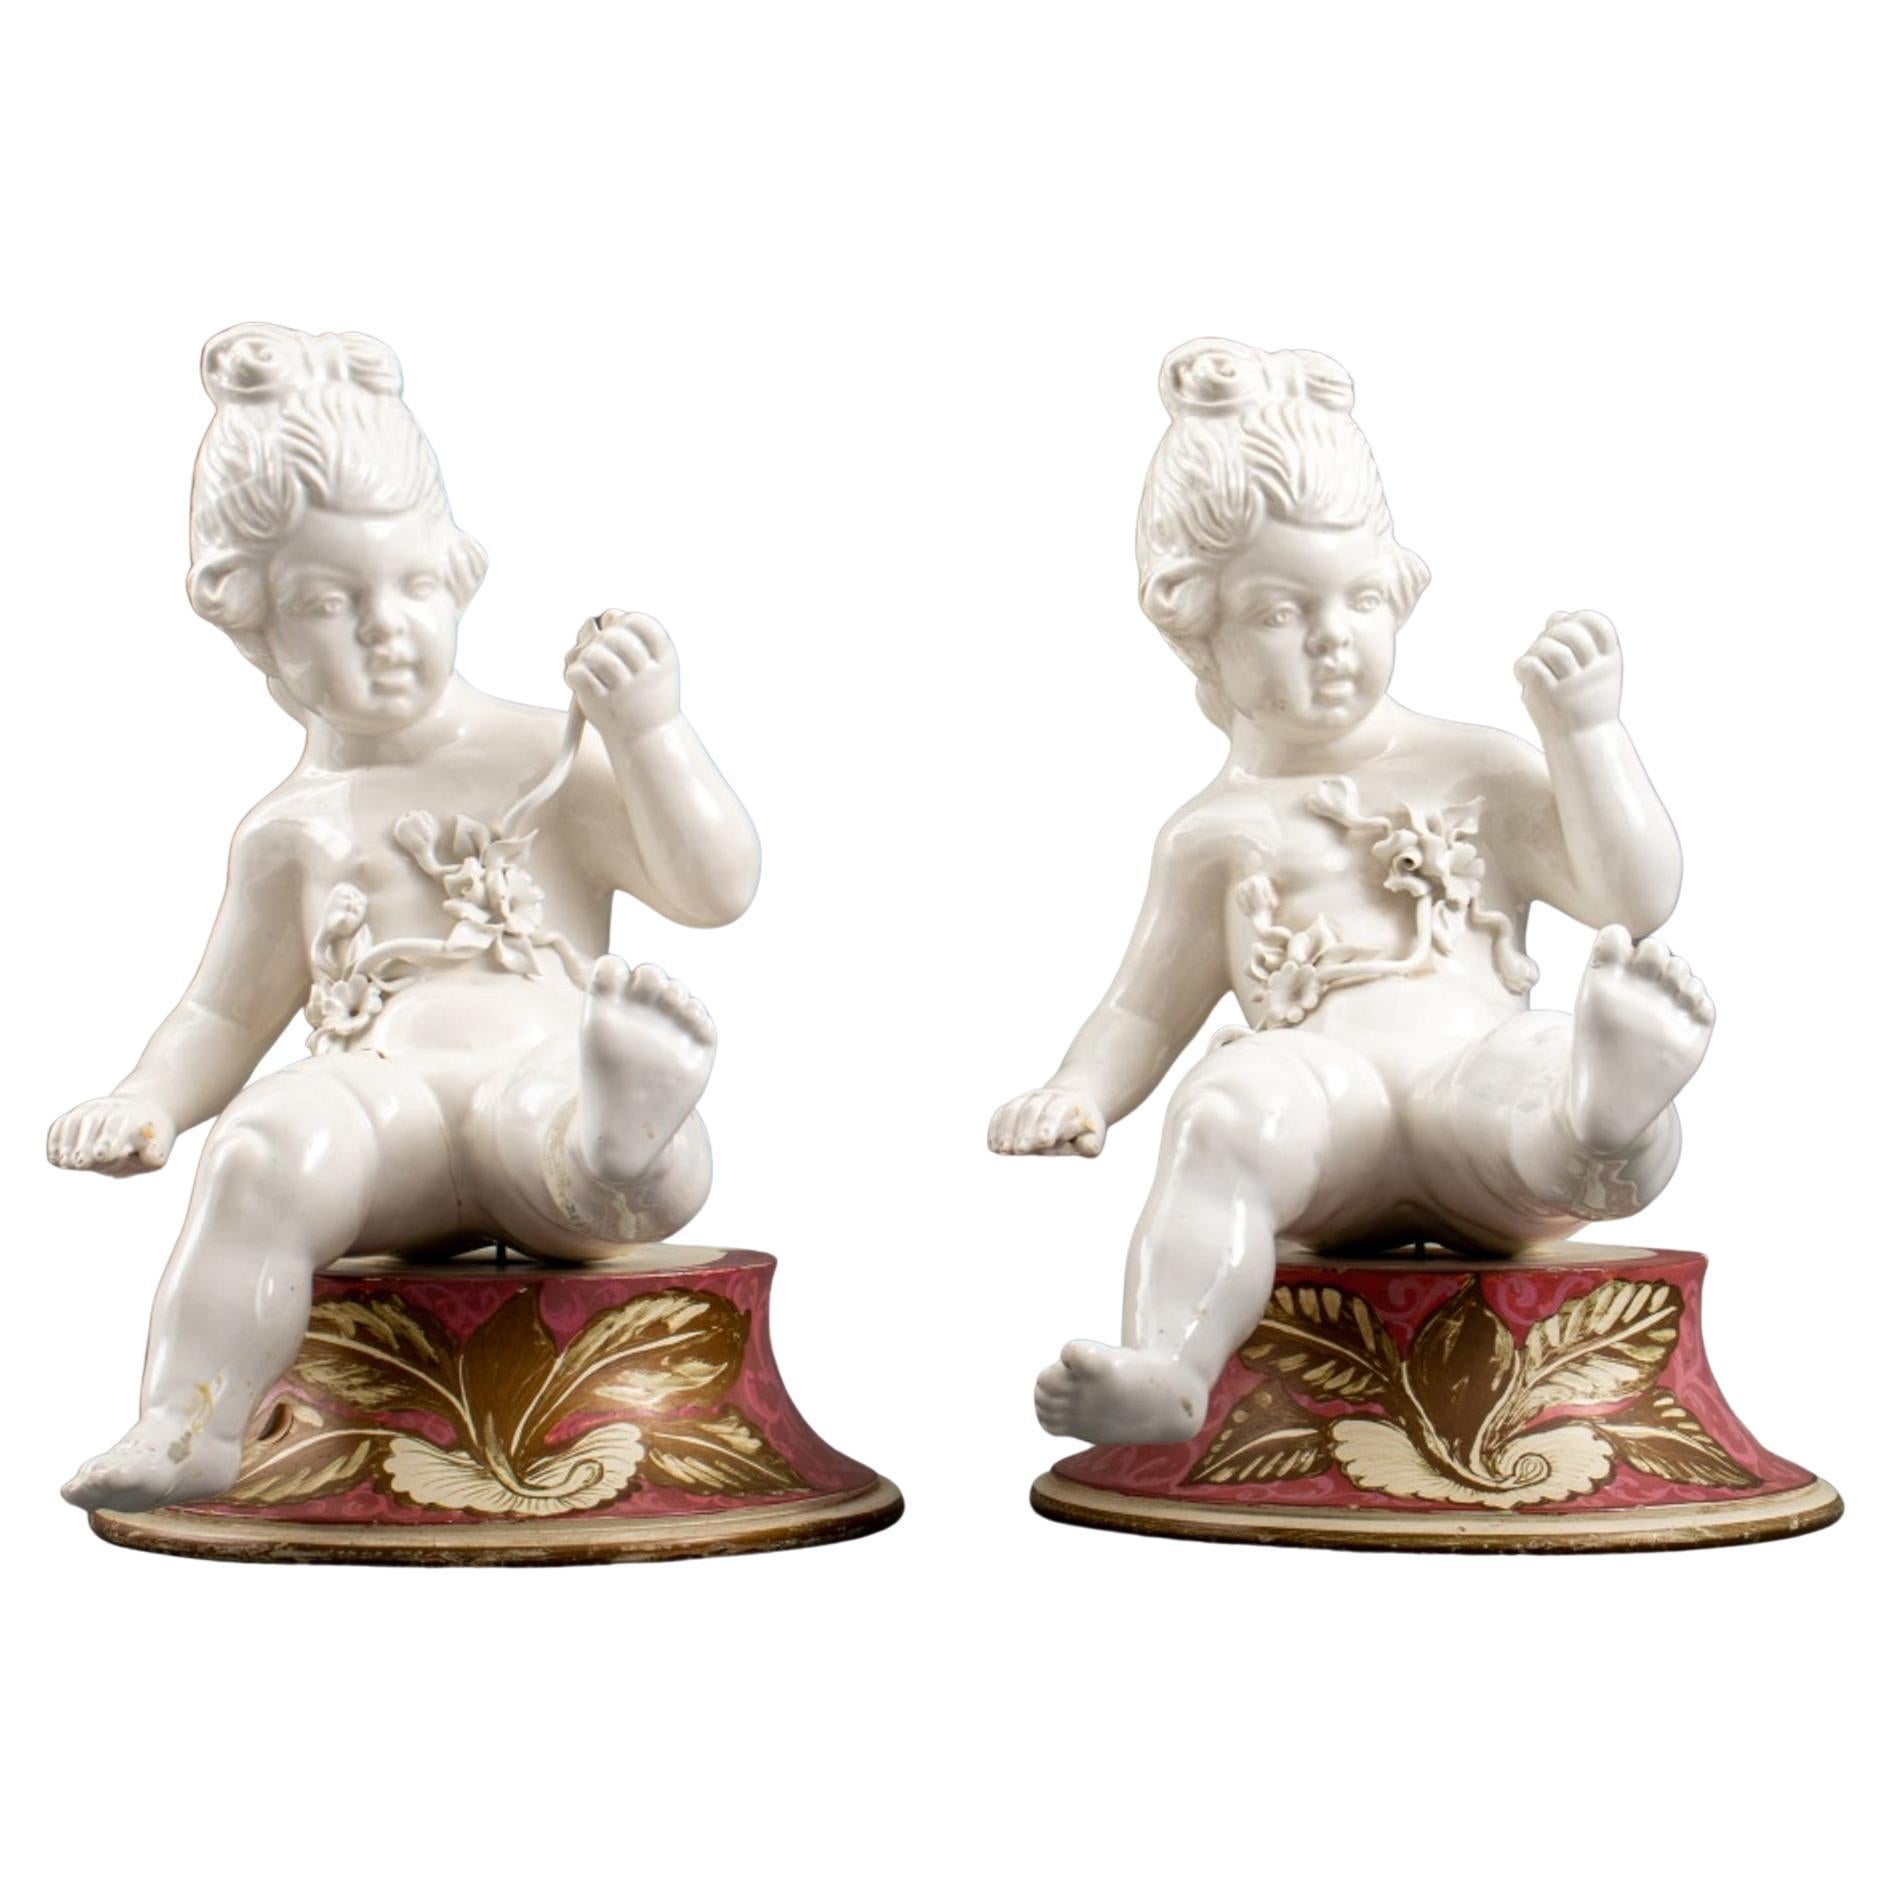 Paar Cherub-Puppen-Skulpturen aus weißem Porzellan